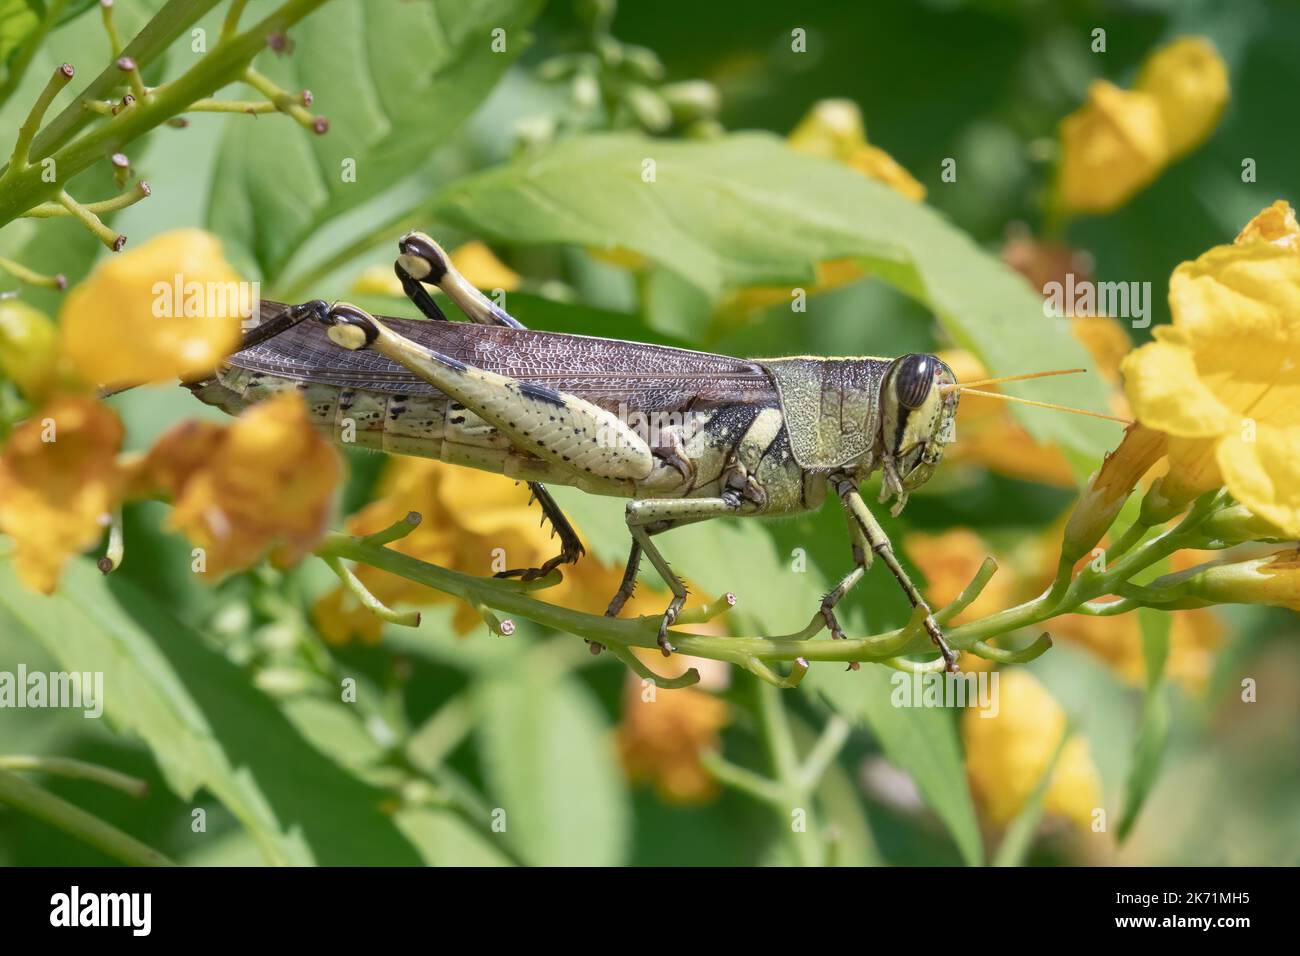 Eine obskure Vogelheuschrecke wandert auf einer blühenden esperanza-Pflanze, während sie sich zum Essen im Mitchell Lake Audubon Center in der Nähe von San Antonio, Texas, vorbereitet. Stockfoto